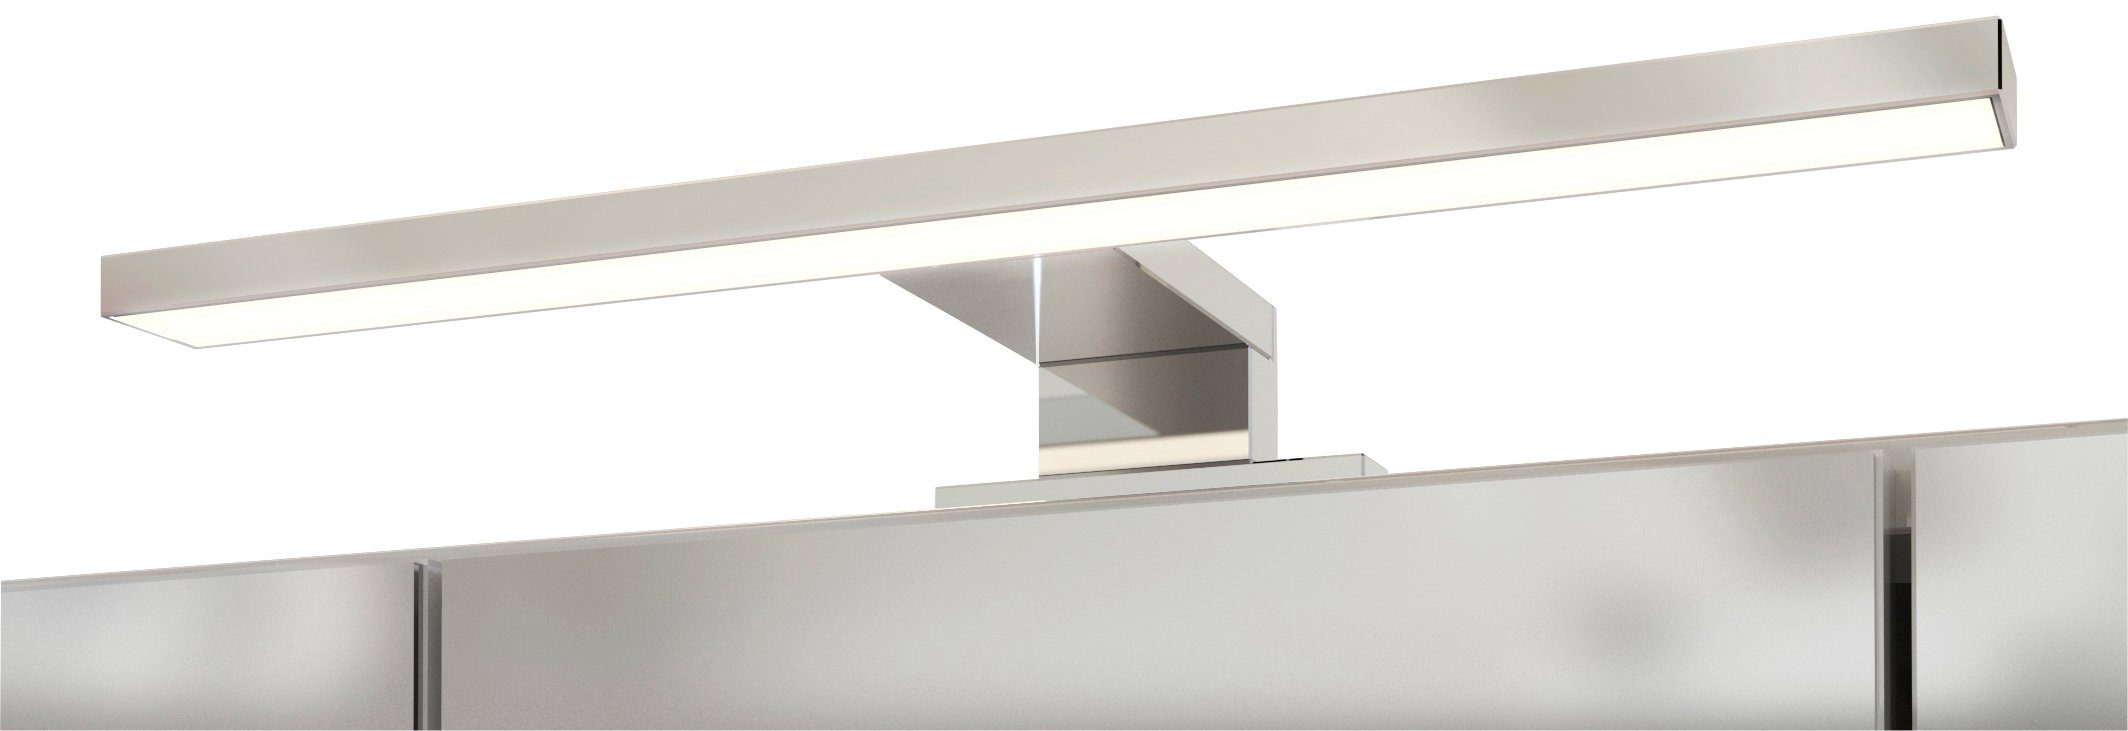 HELD MÖBEL Spiegelschrank LED-Beleuchtung weiß/weiß weiß Livorno Inklusive 